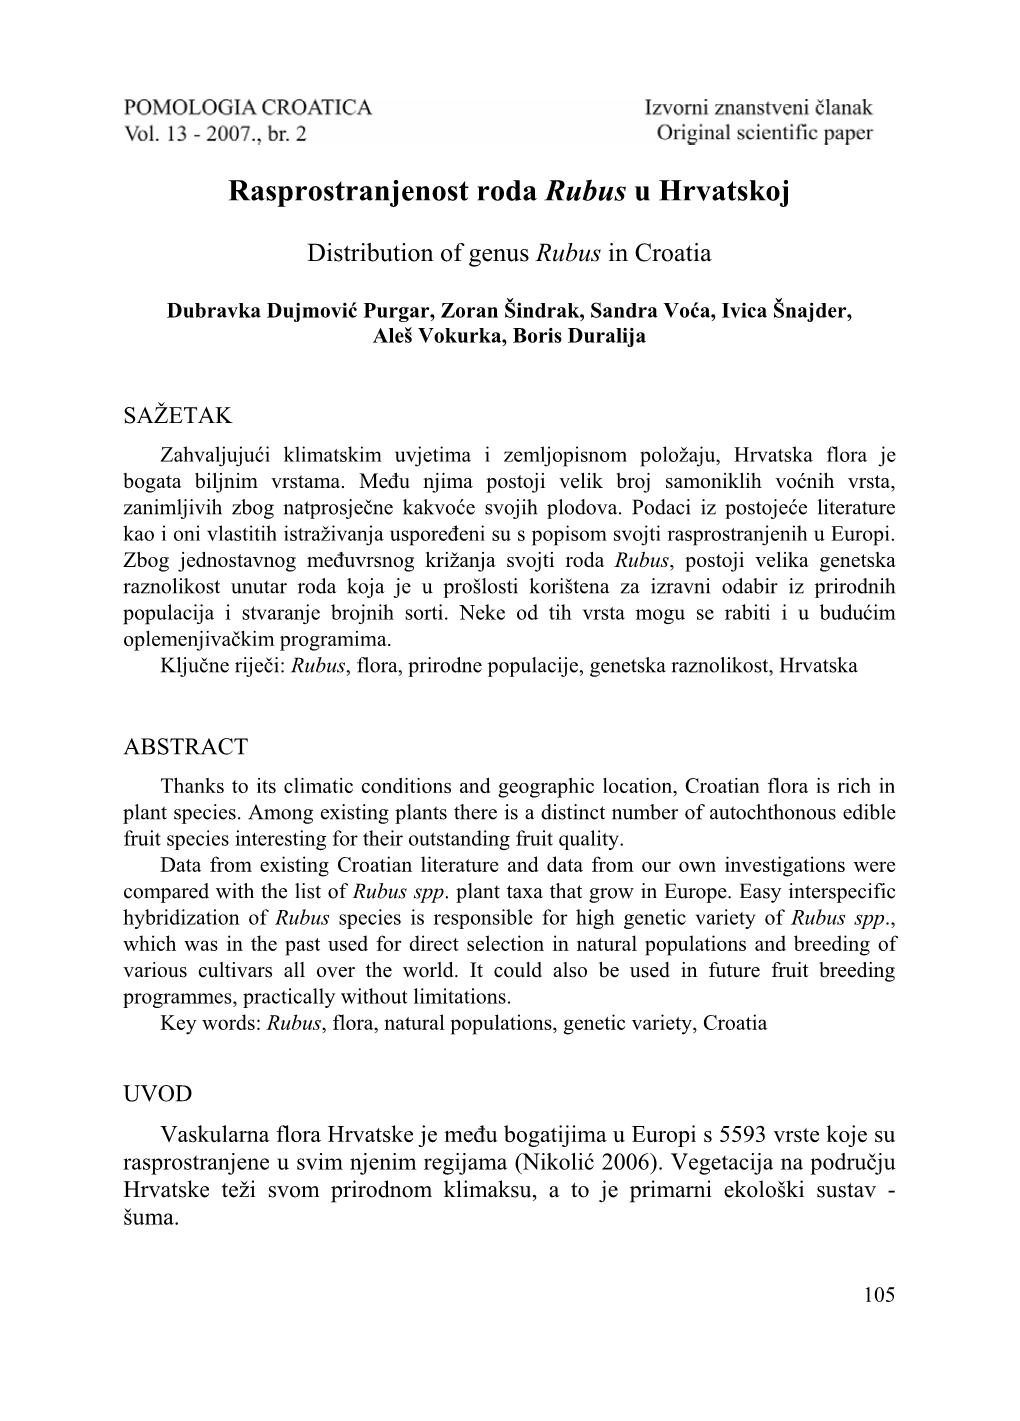 Rasprostranjenost Roda Rubus U Hrvatskoj